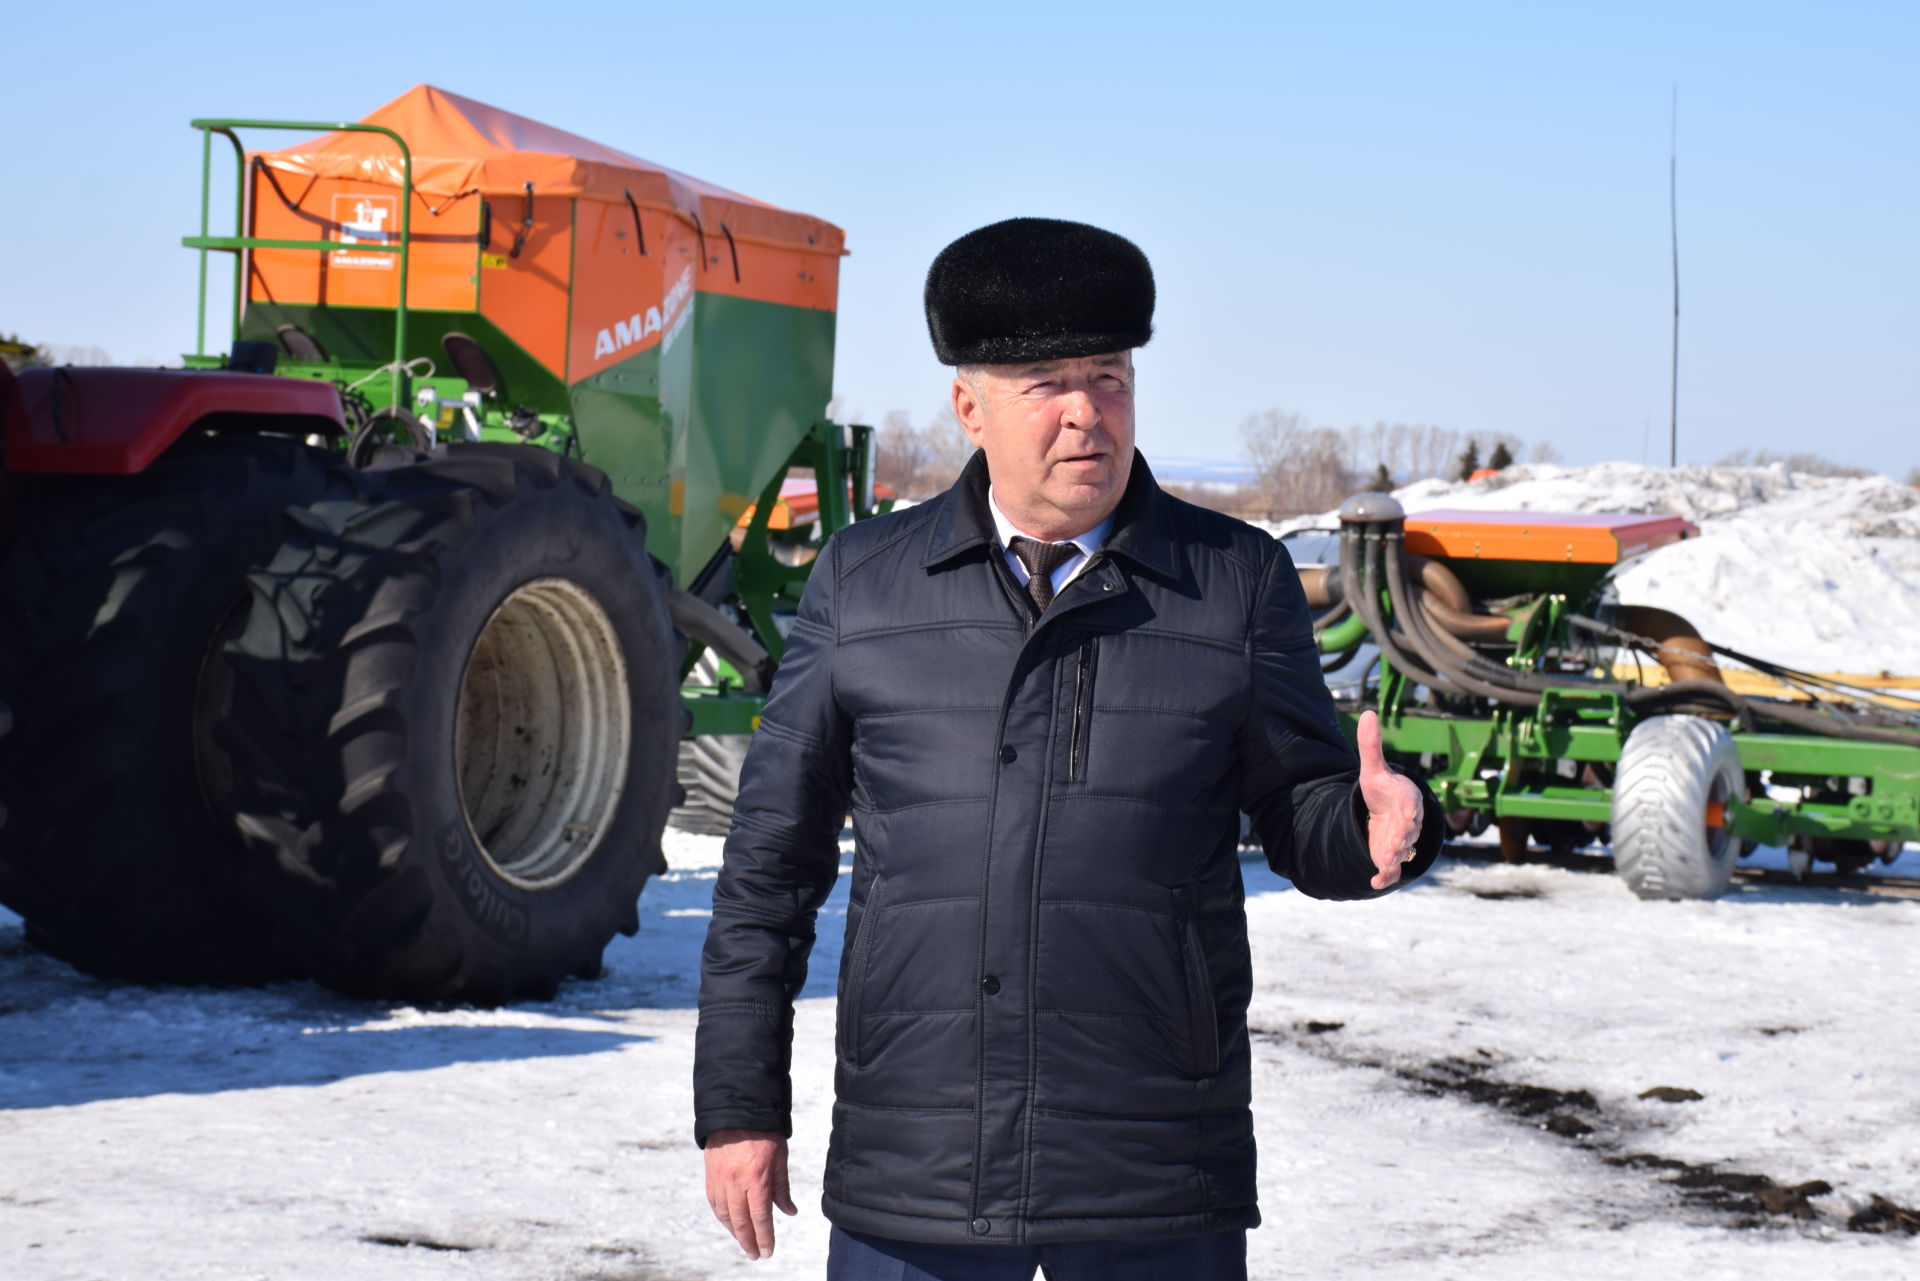 Сельхозтехника КФХ «Сулейманов А.И.» в этом году на поля выйдет под знаком Z